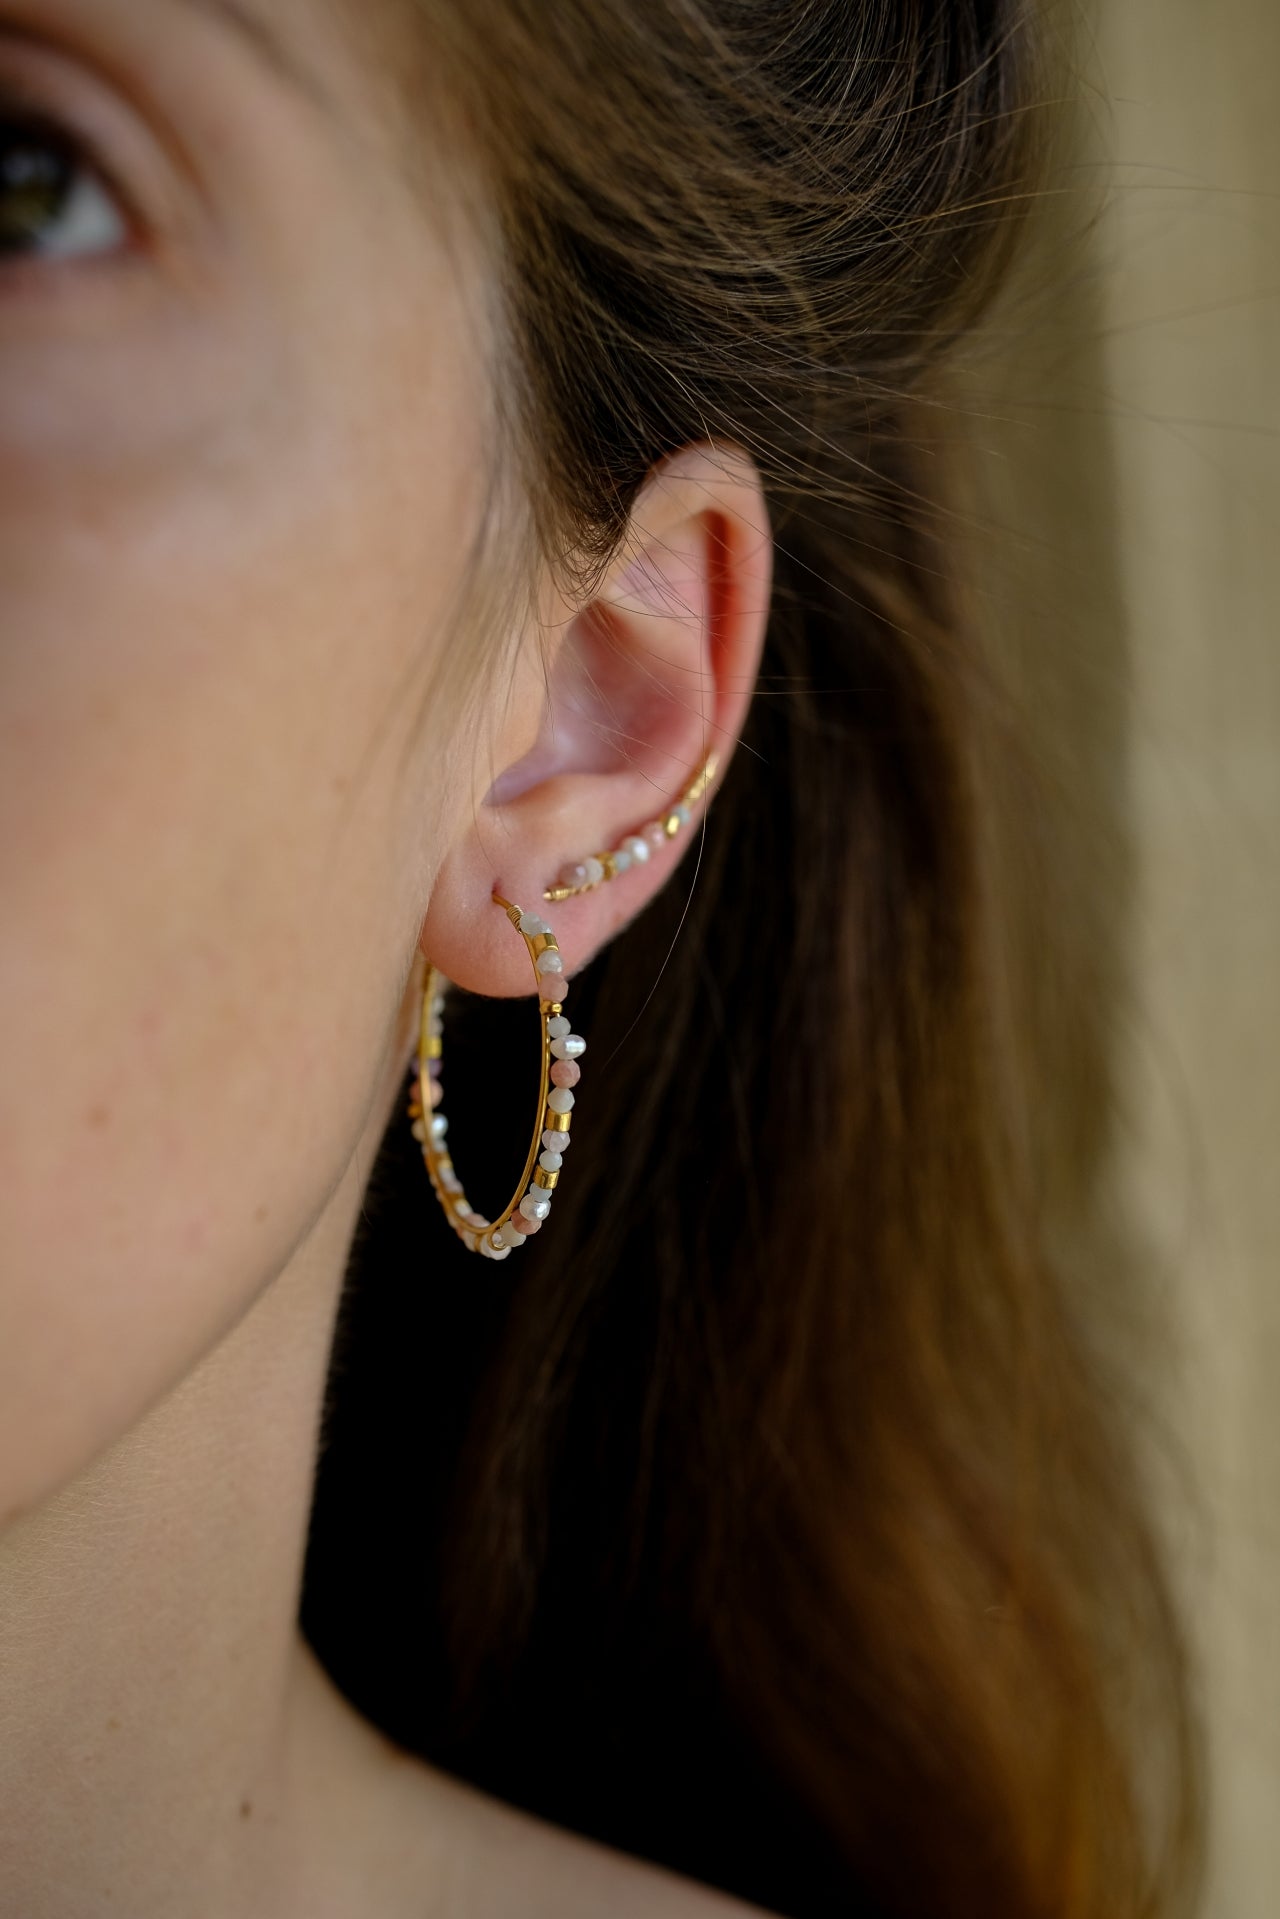 “Wild” earrings